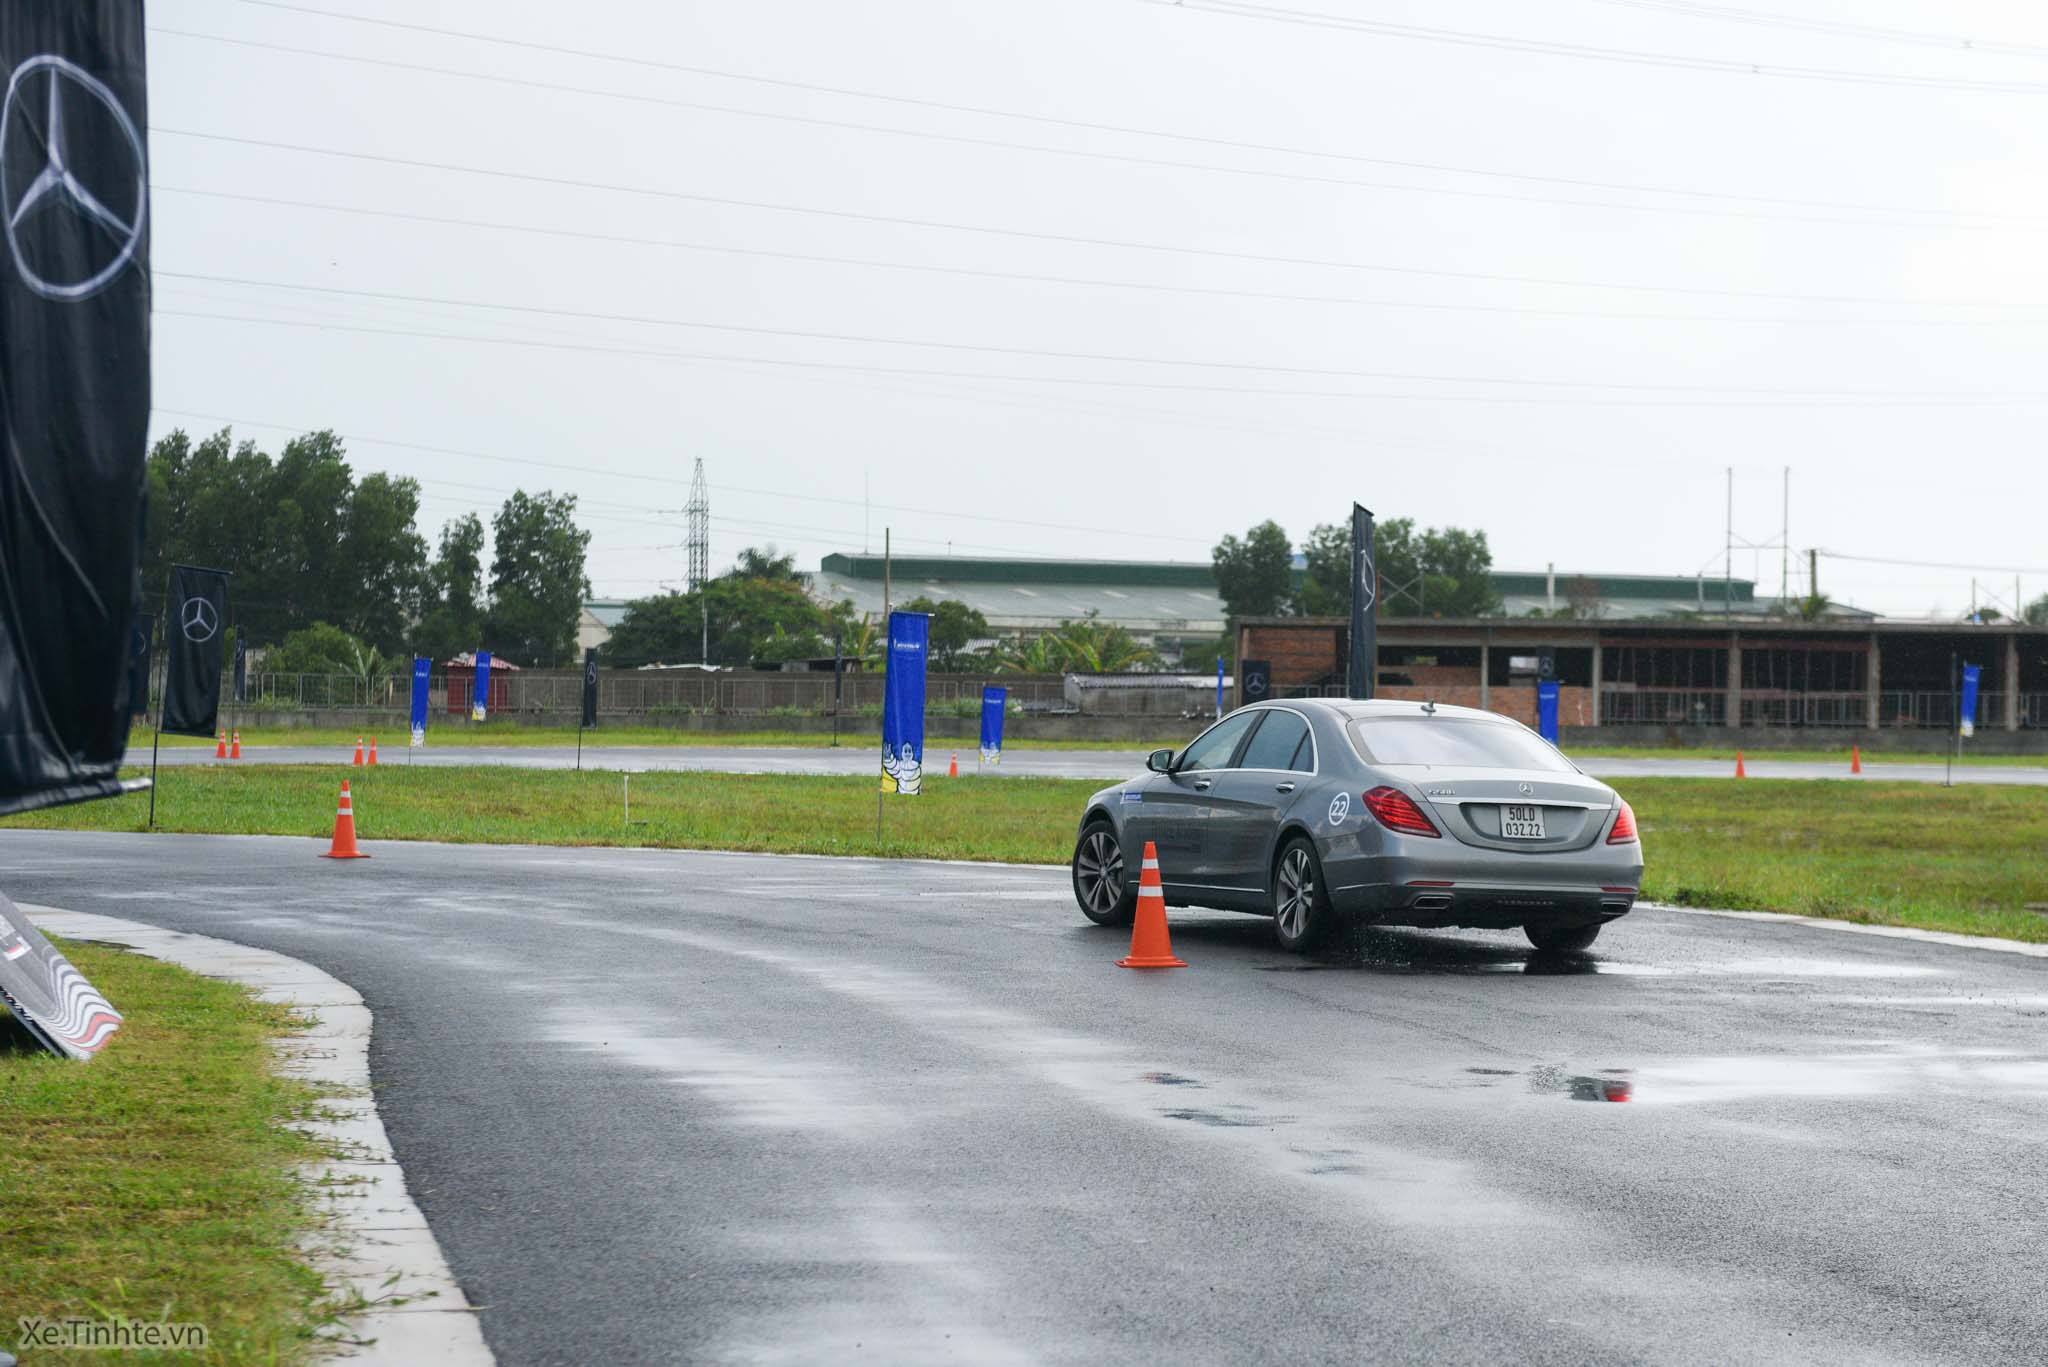 Xe.Tinhte.vn-Mercedes-Benz-Driving-Academy-2016-2.jpg